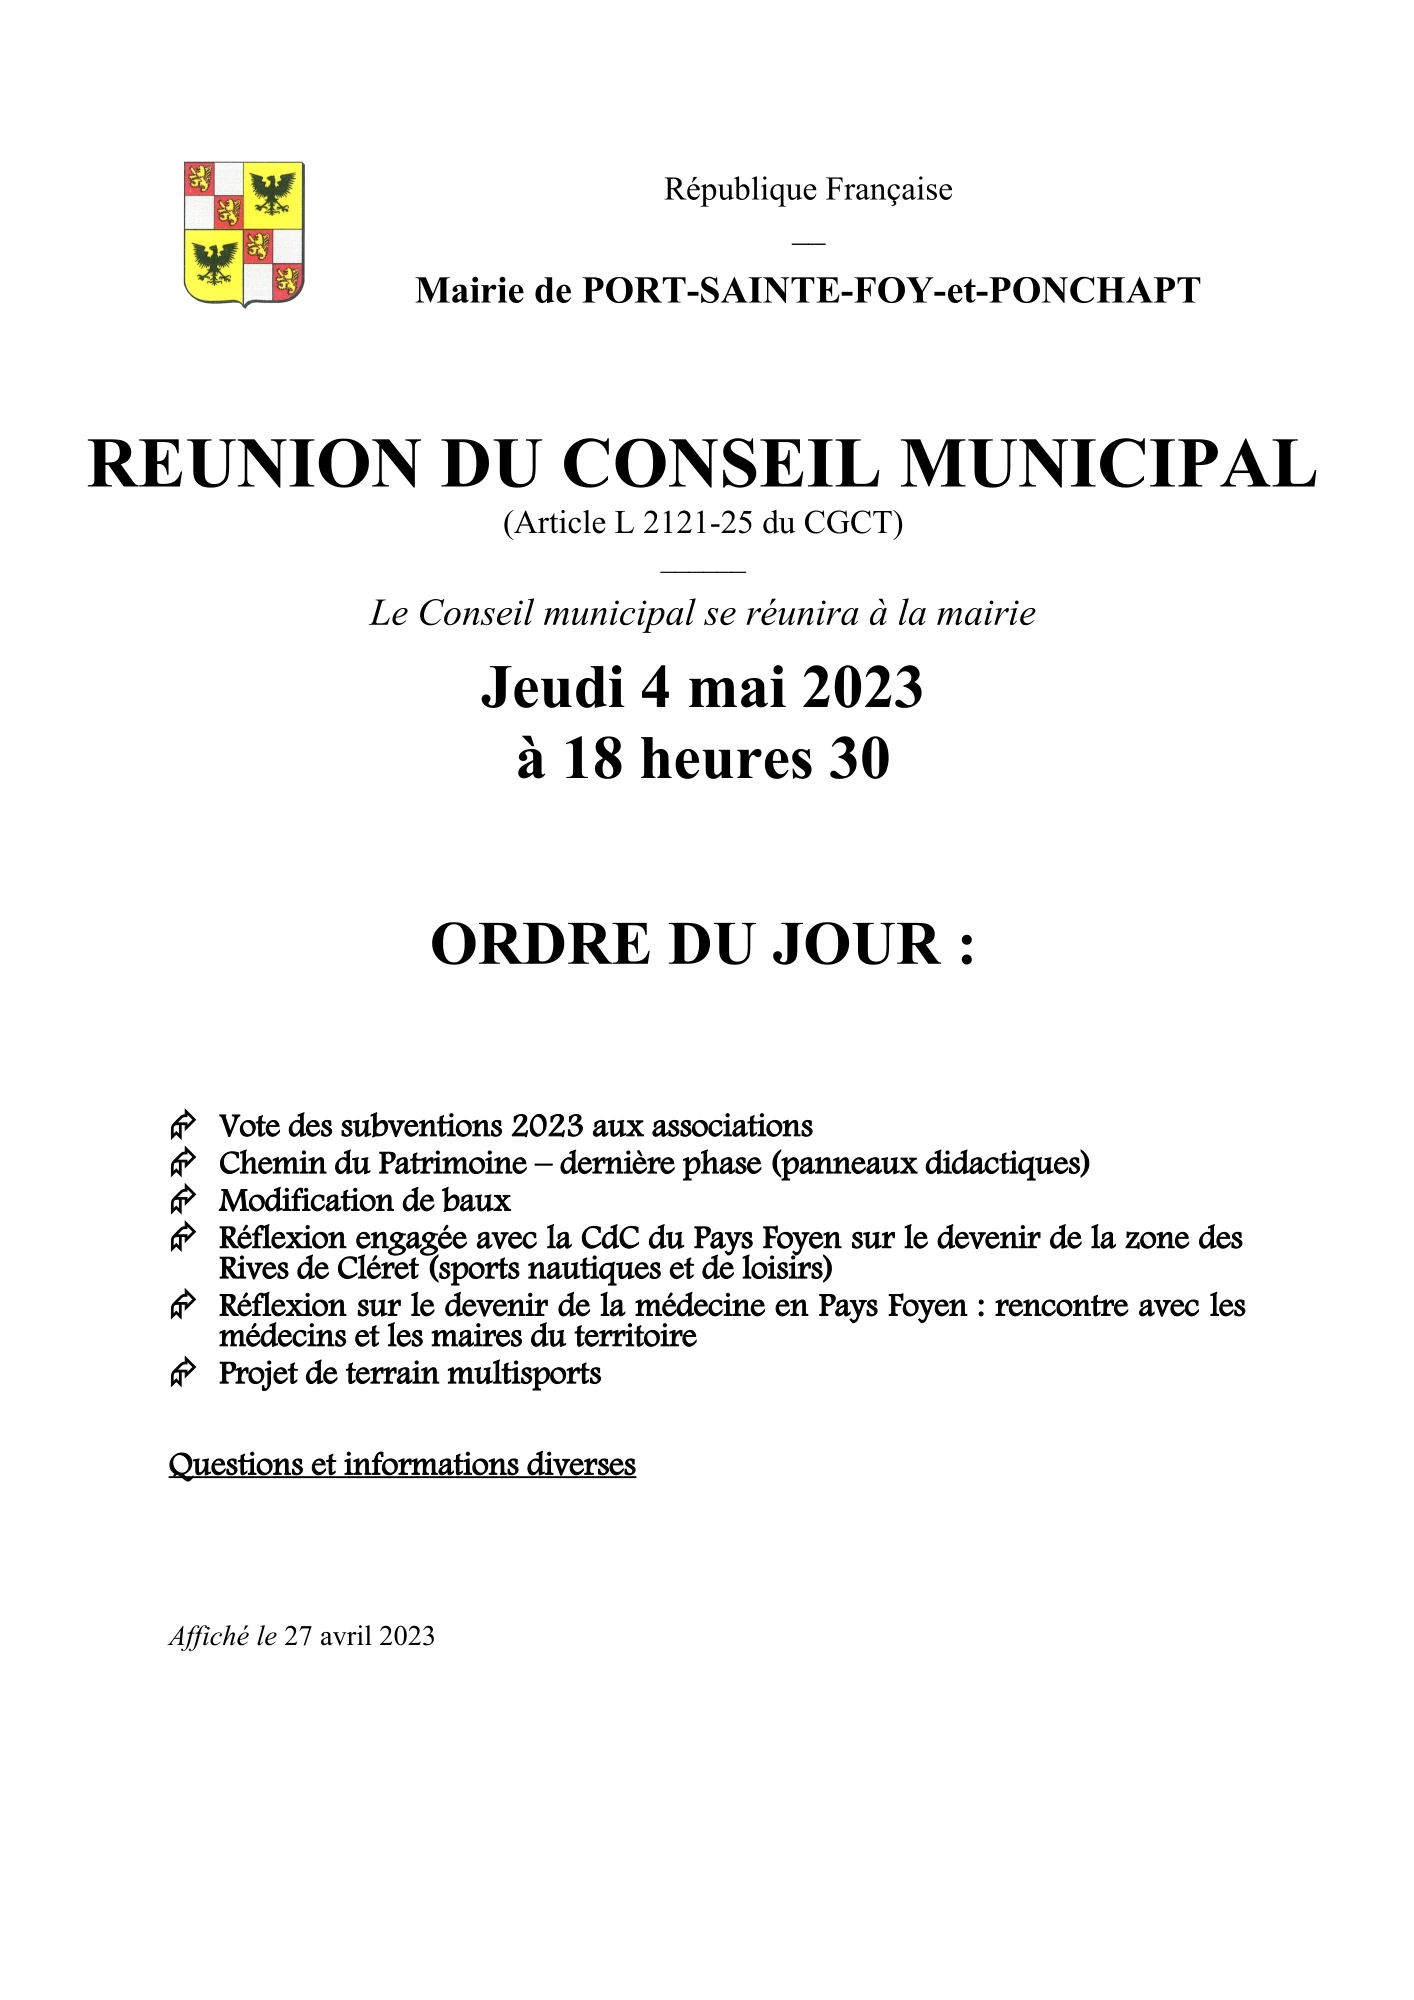 Ordre du jour du Conseil Municipal du 4 mai 2023